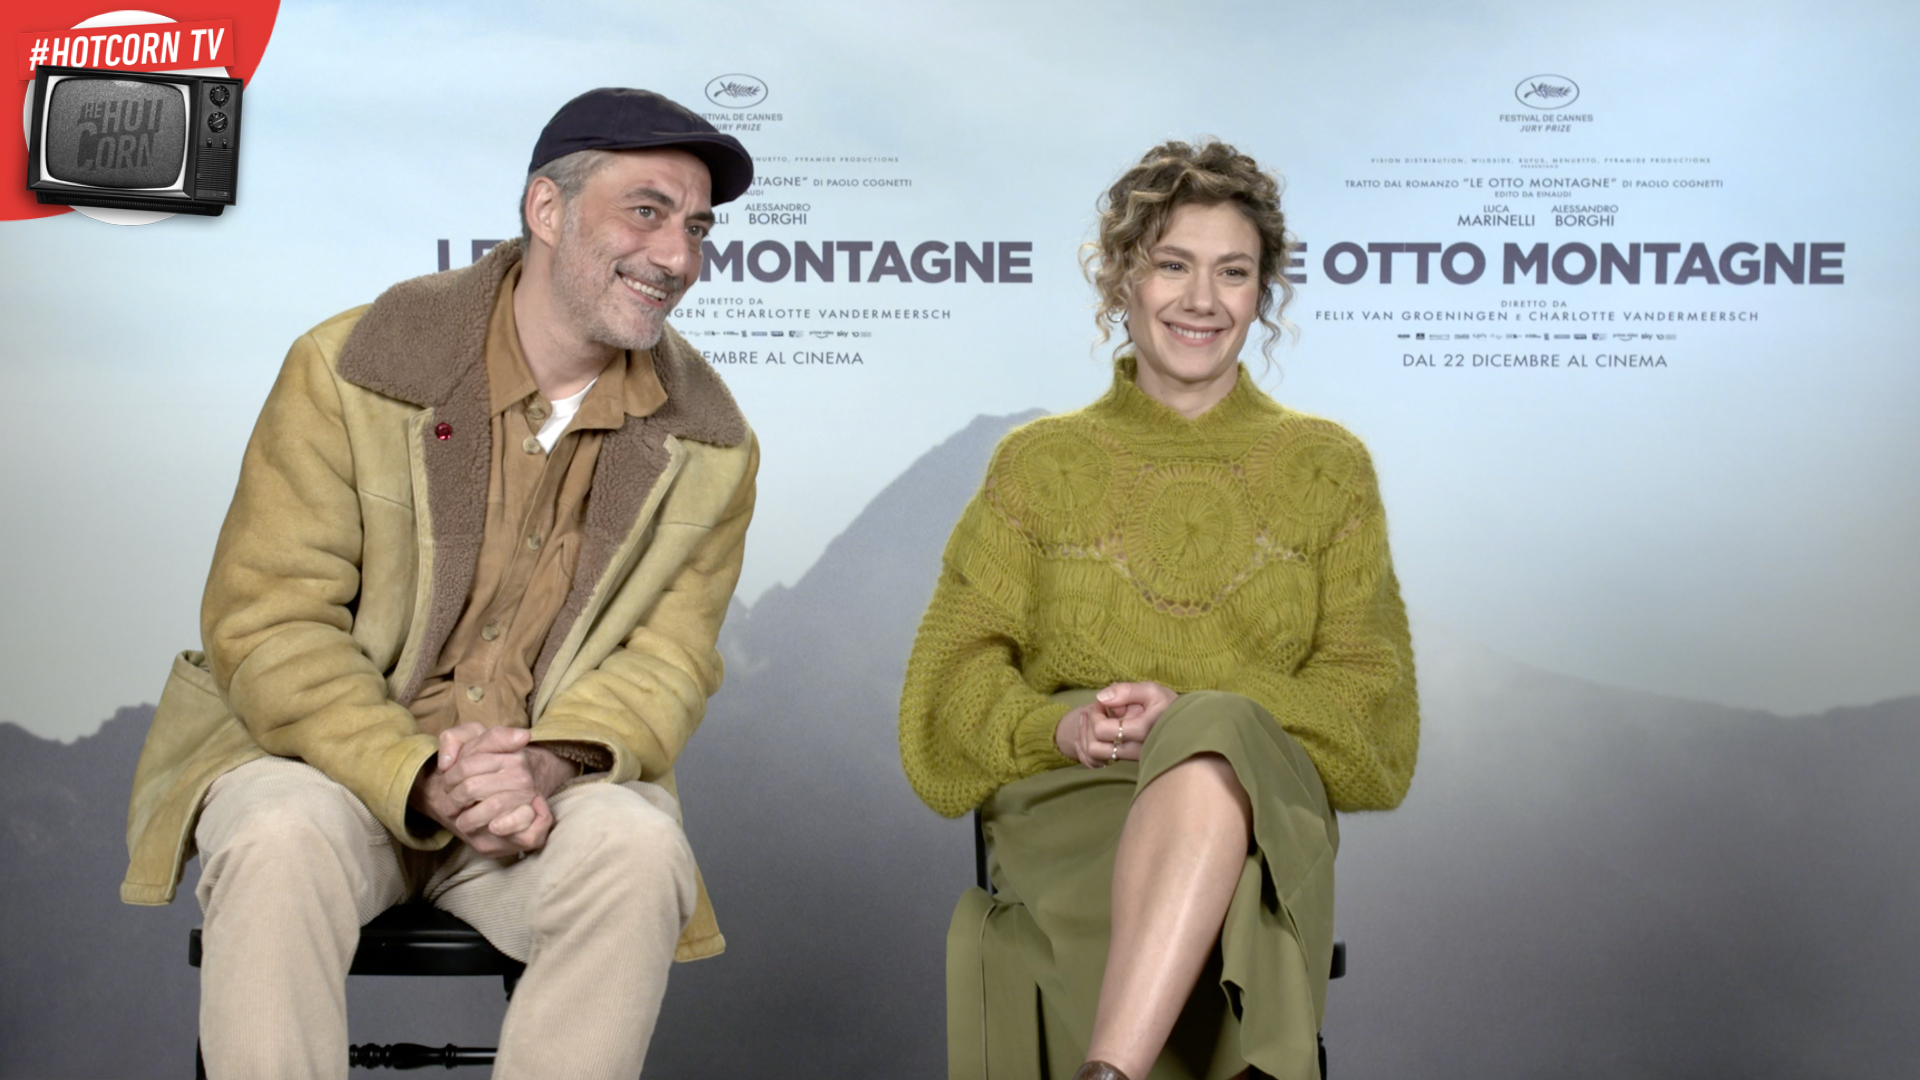 Le Otto Montagne: Elisabetta Mazzullo e Filippo Timi raccontano il film